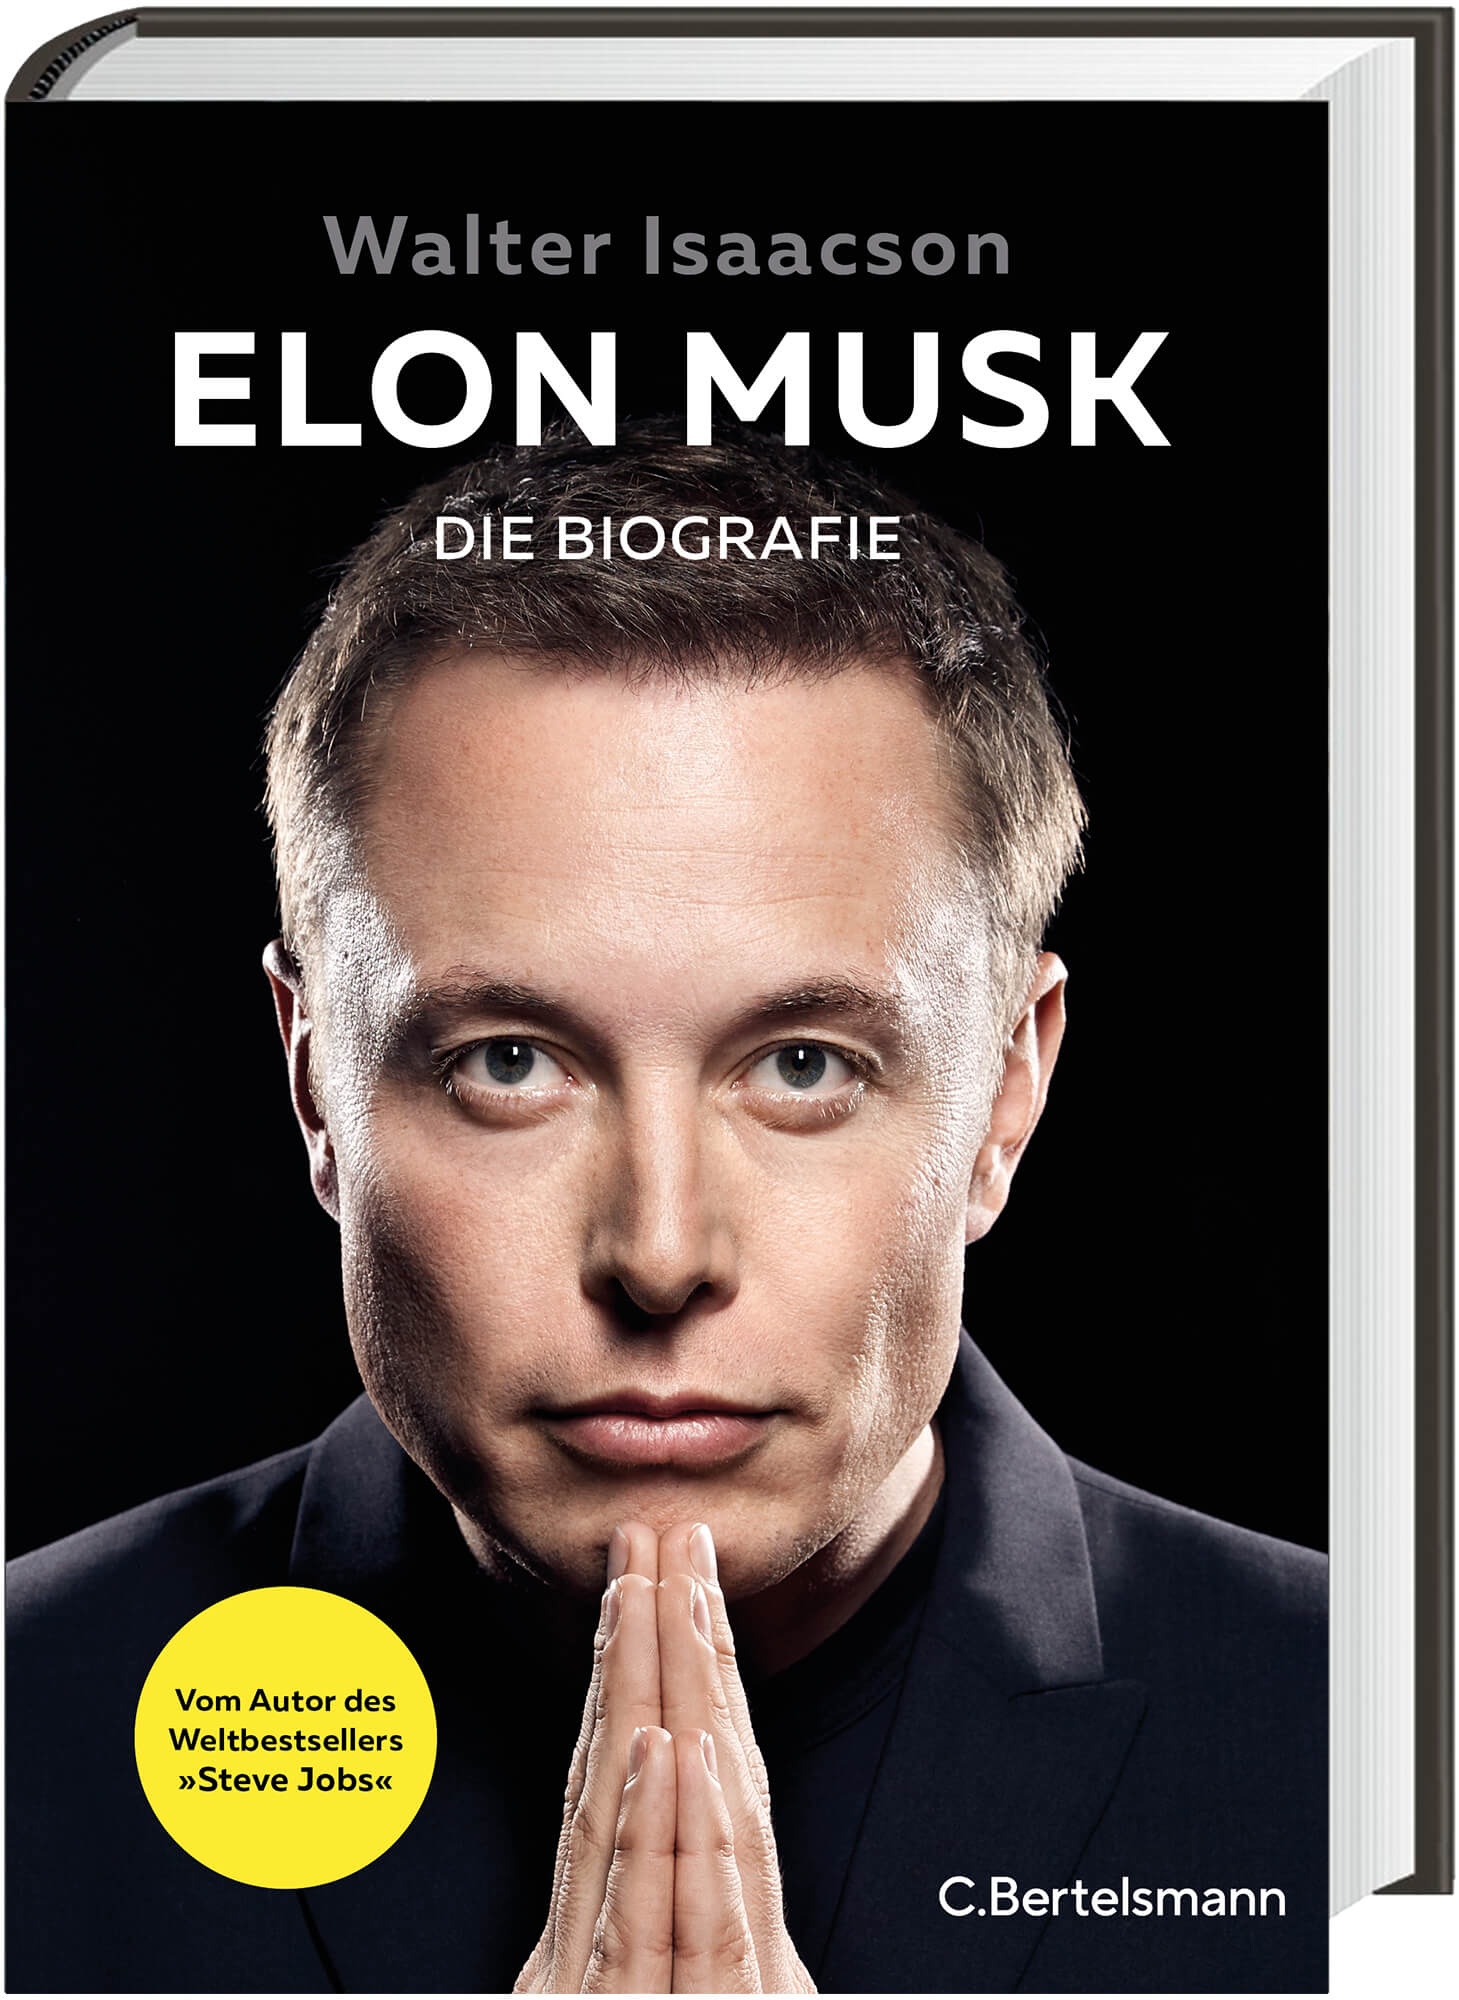 Elon Musk „Die Biografie“ von Walter Isaacson